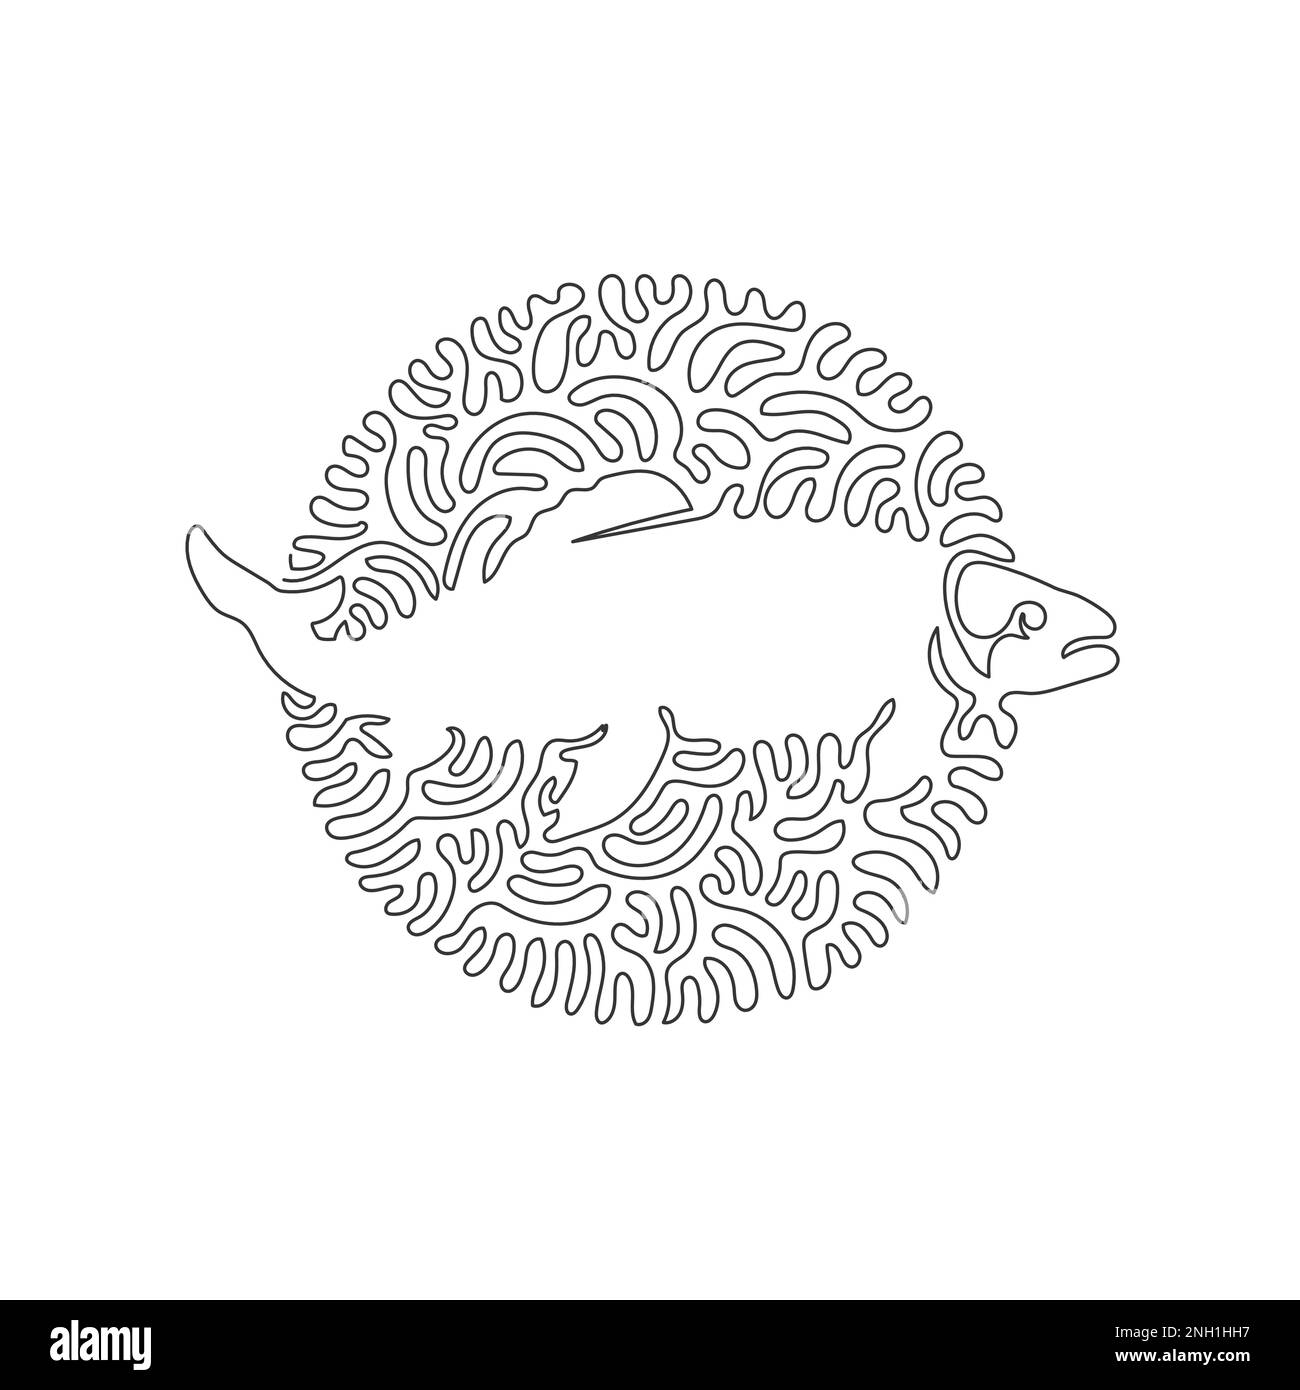 Disegno continuo di una linea dell'arte astratta della creatura mitologica L'illustrazione del vettore del tratto modificabile a riga singola della coda di un salmone è affusolata Illustrazione Vettoriale